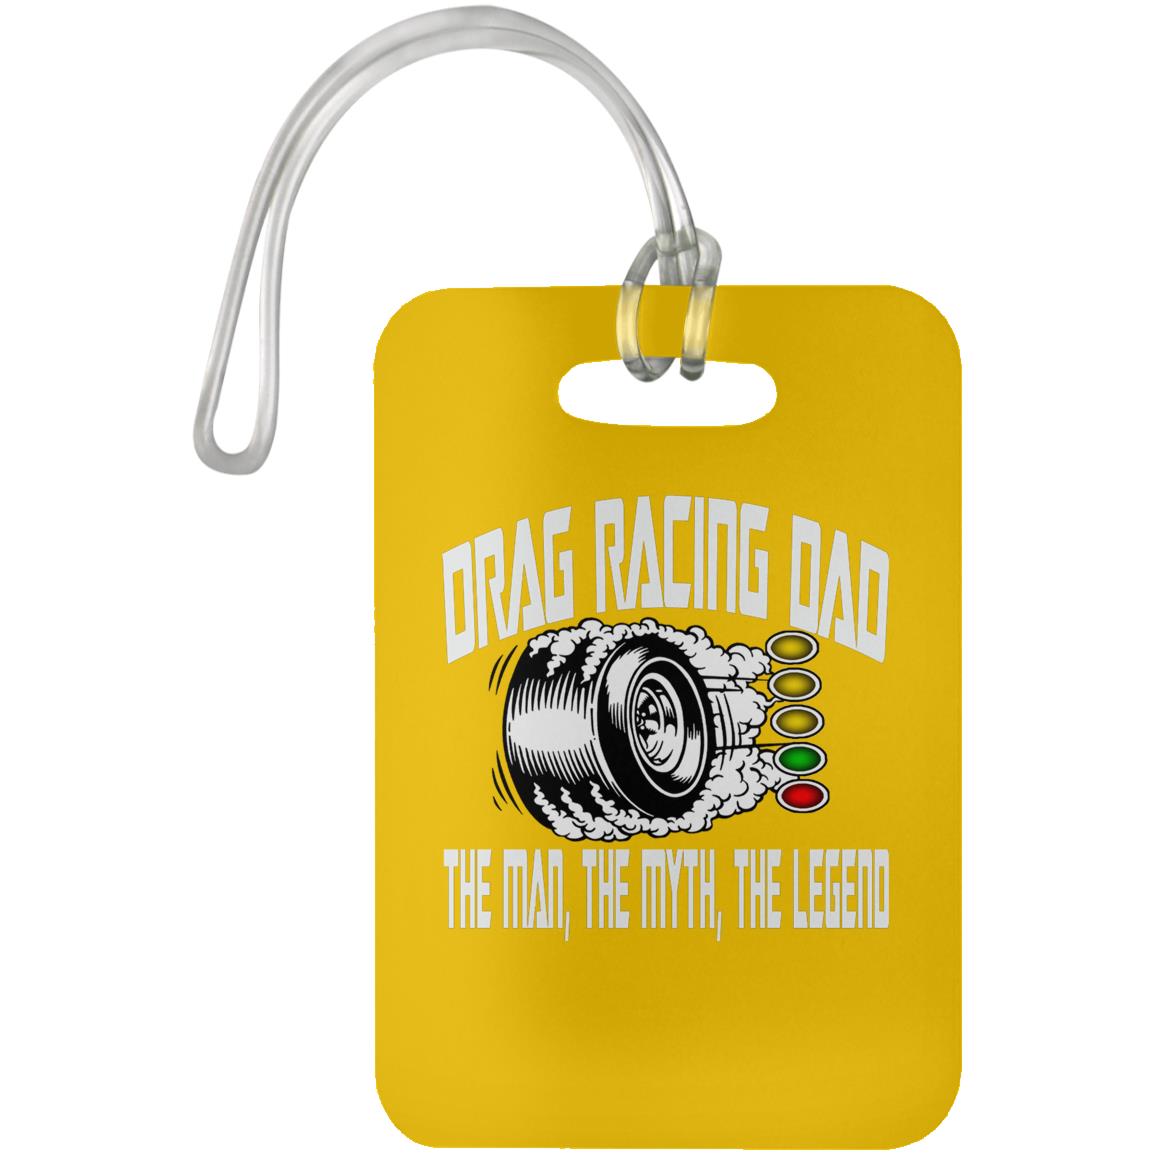 Drag Racing Dad Luggage Bag Tag